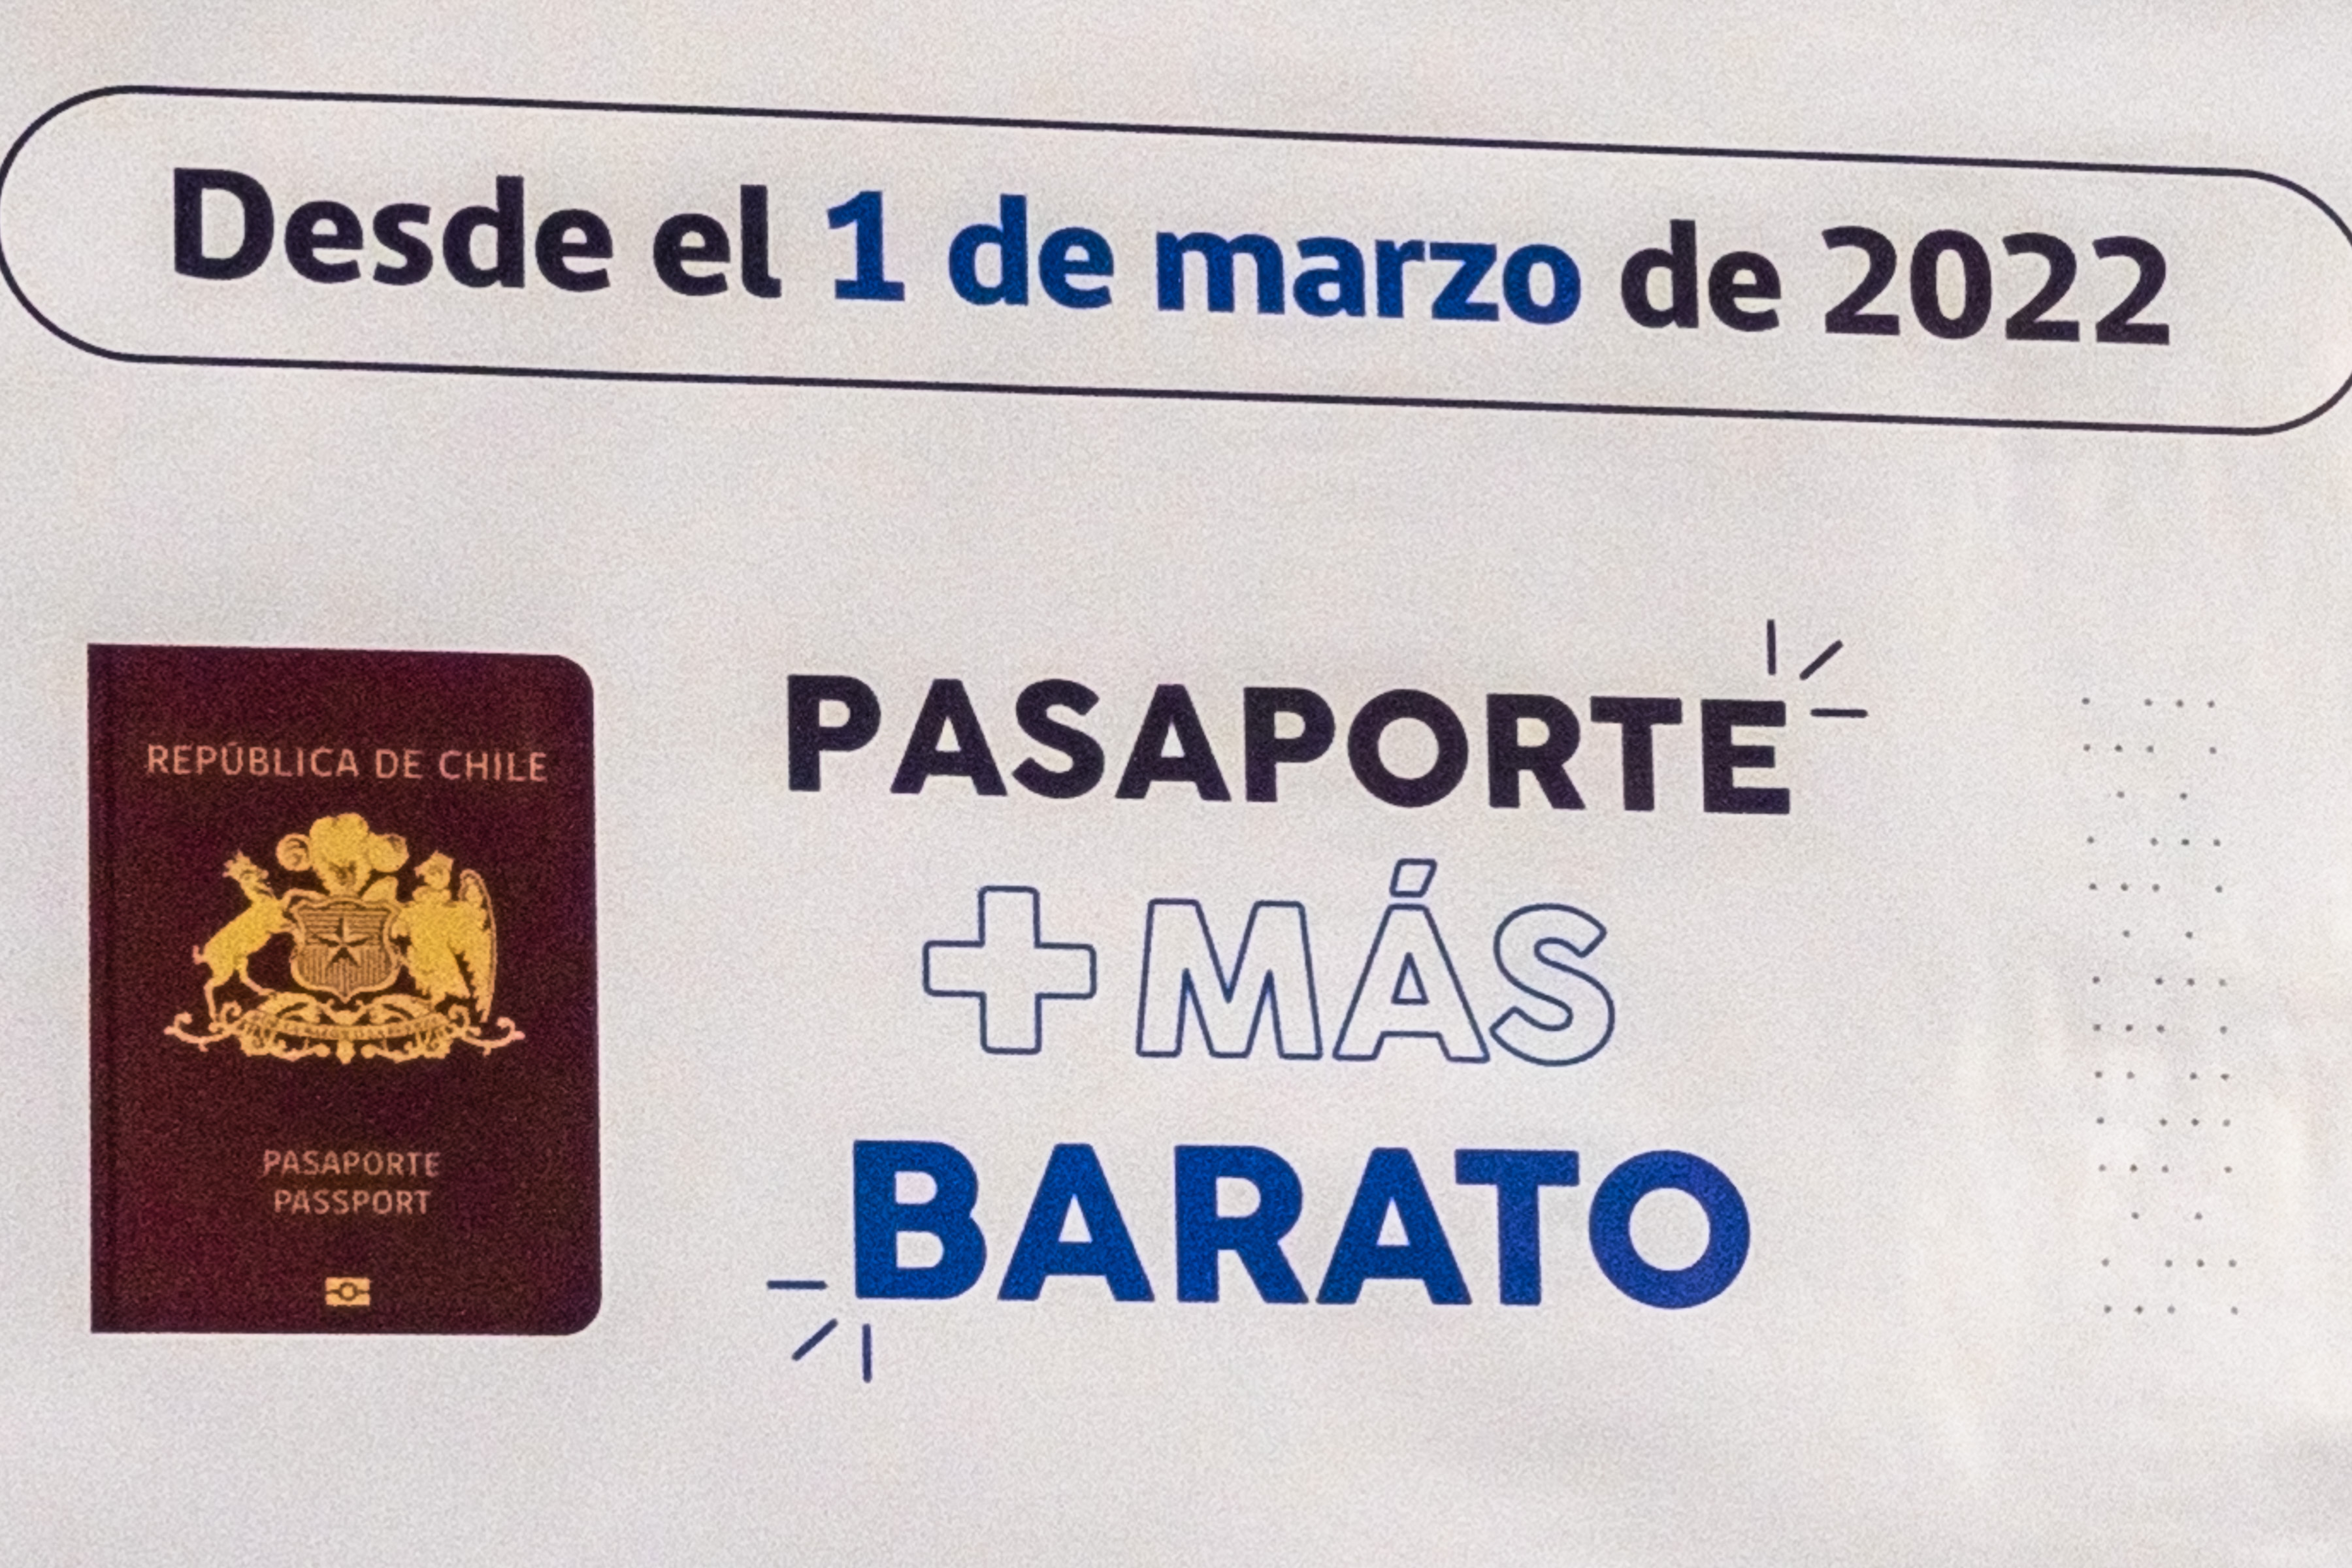 Imagen de pasaporte en publicidad de su reducción de precio.